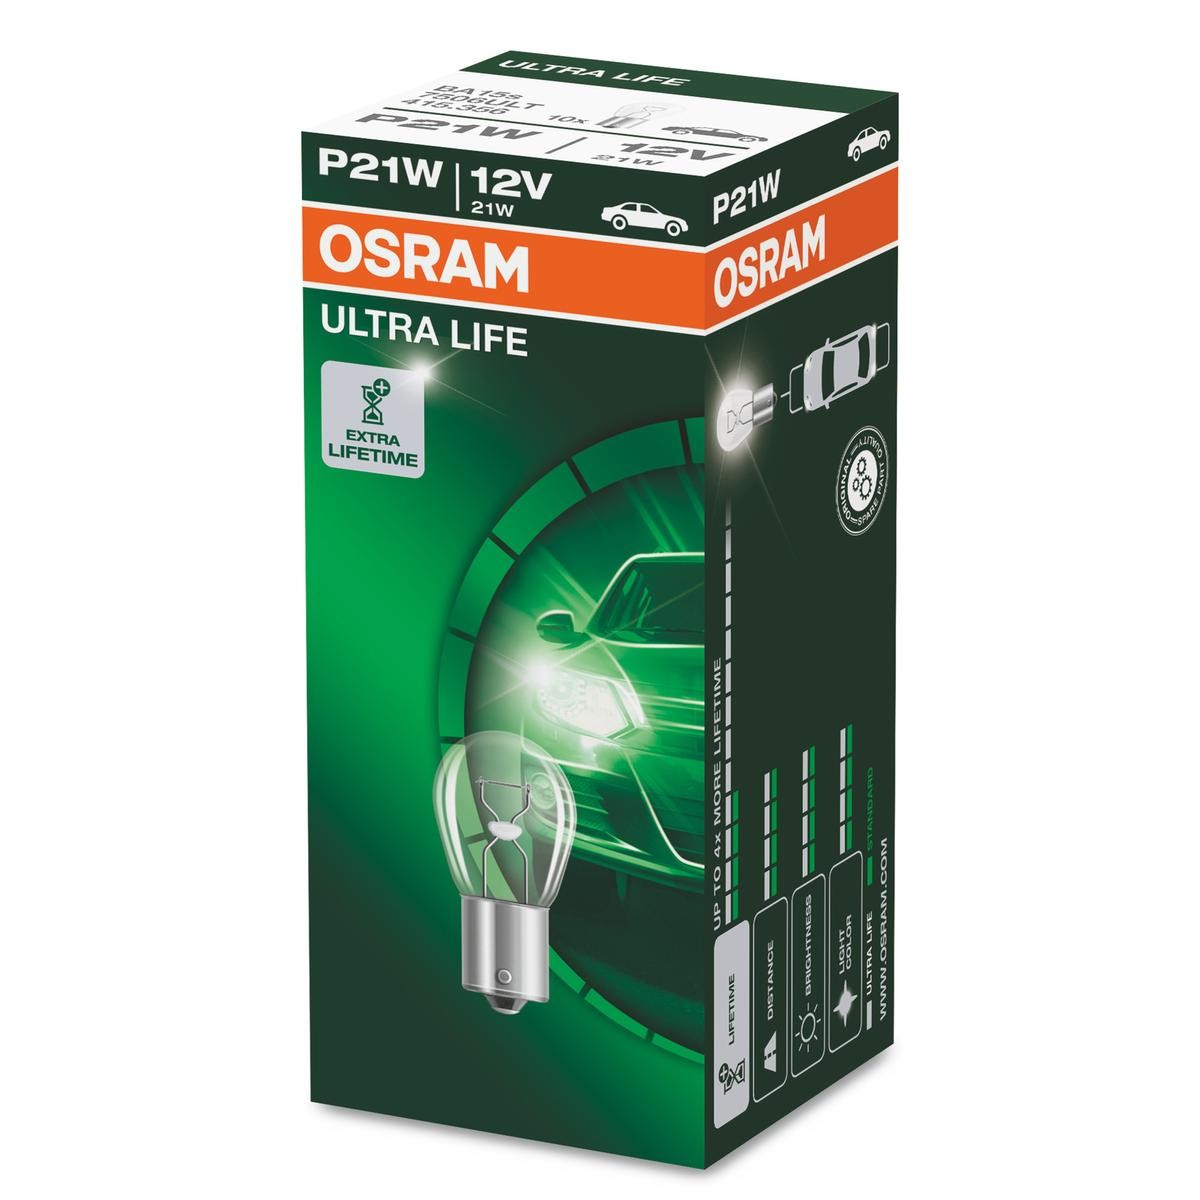 7506ULT OSRAM ULTRA LIFE P21W Ampoule, feu clignotant 12V 21W, P21W P21W  ❱❱❱ prix et expérience